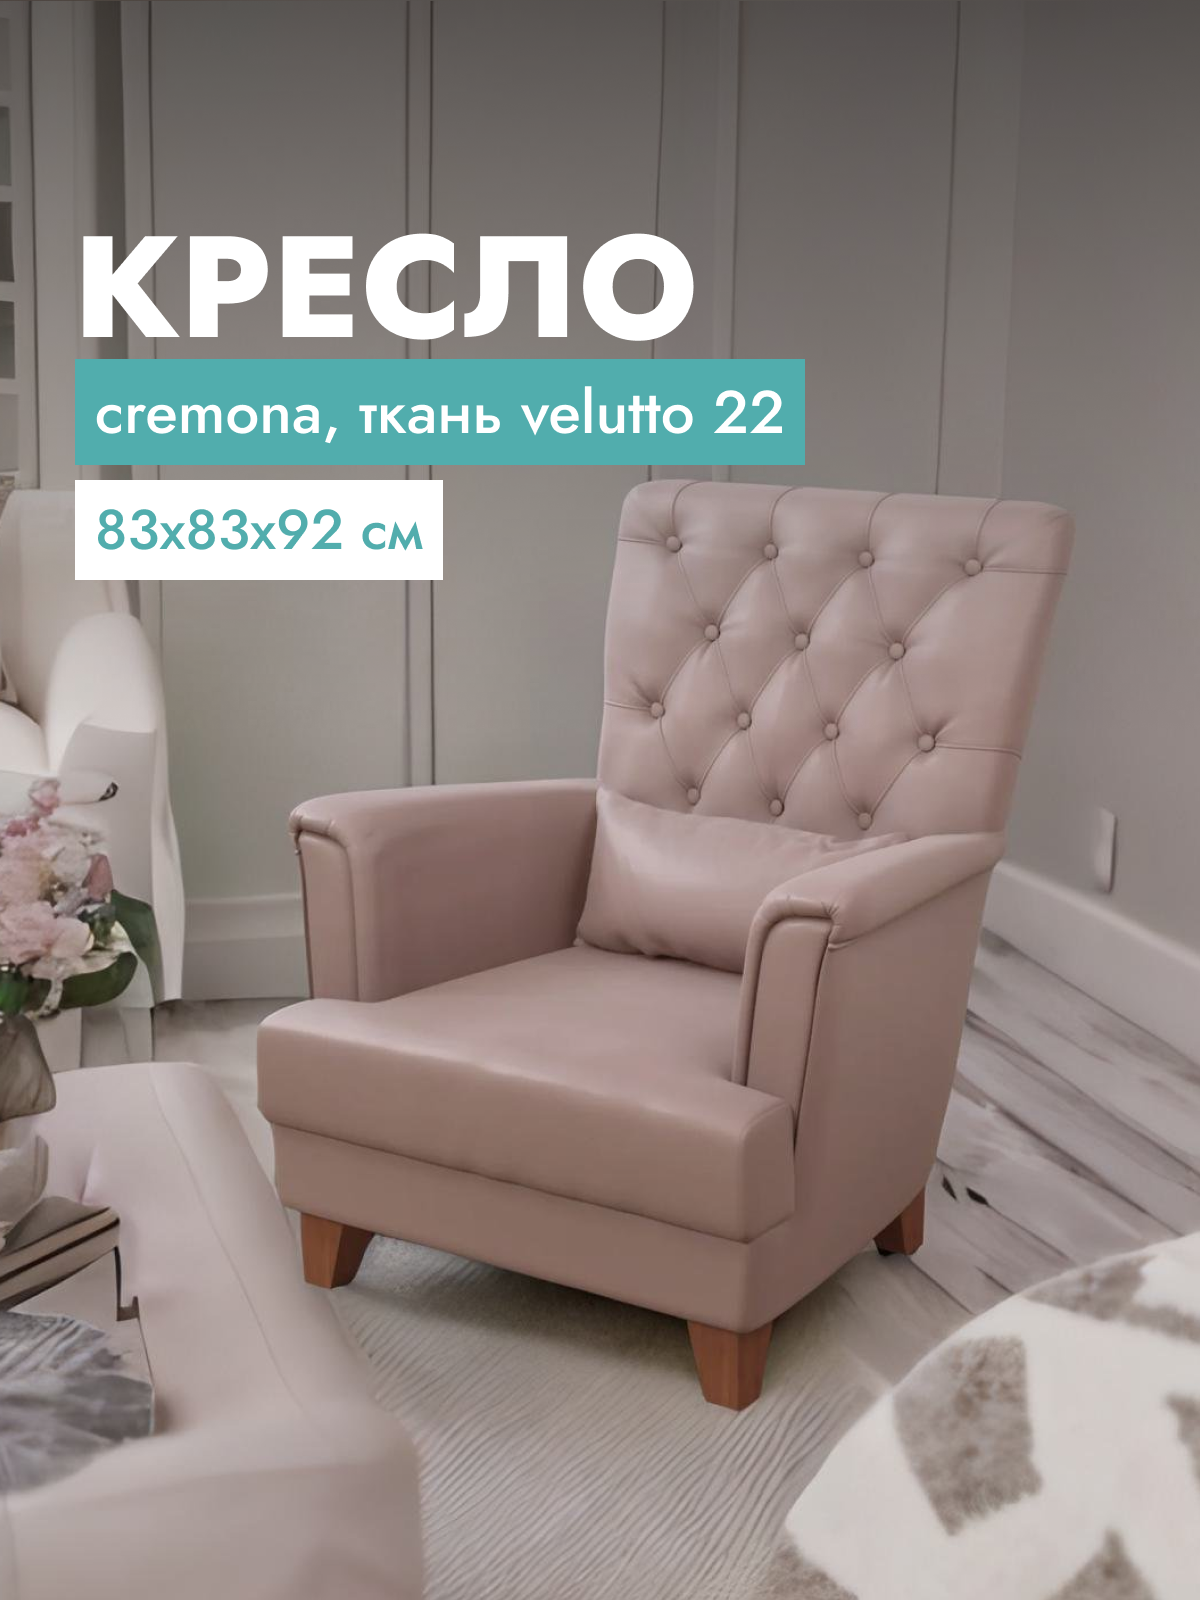 Кресло для гостиной Alat Home Cremona, ткань, 83x83x92 см, коричневый